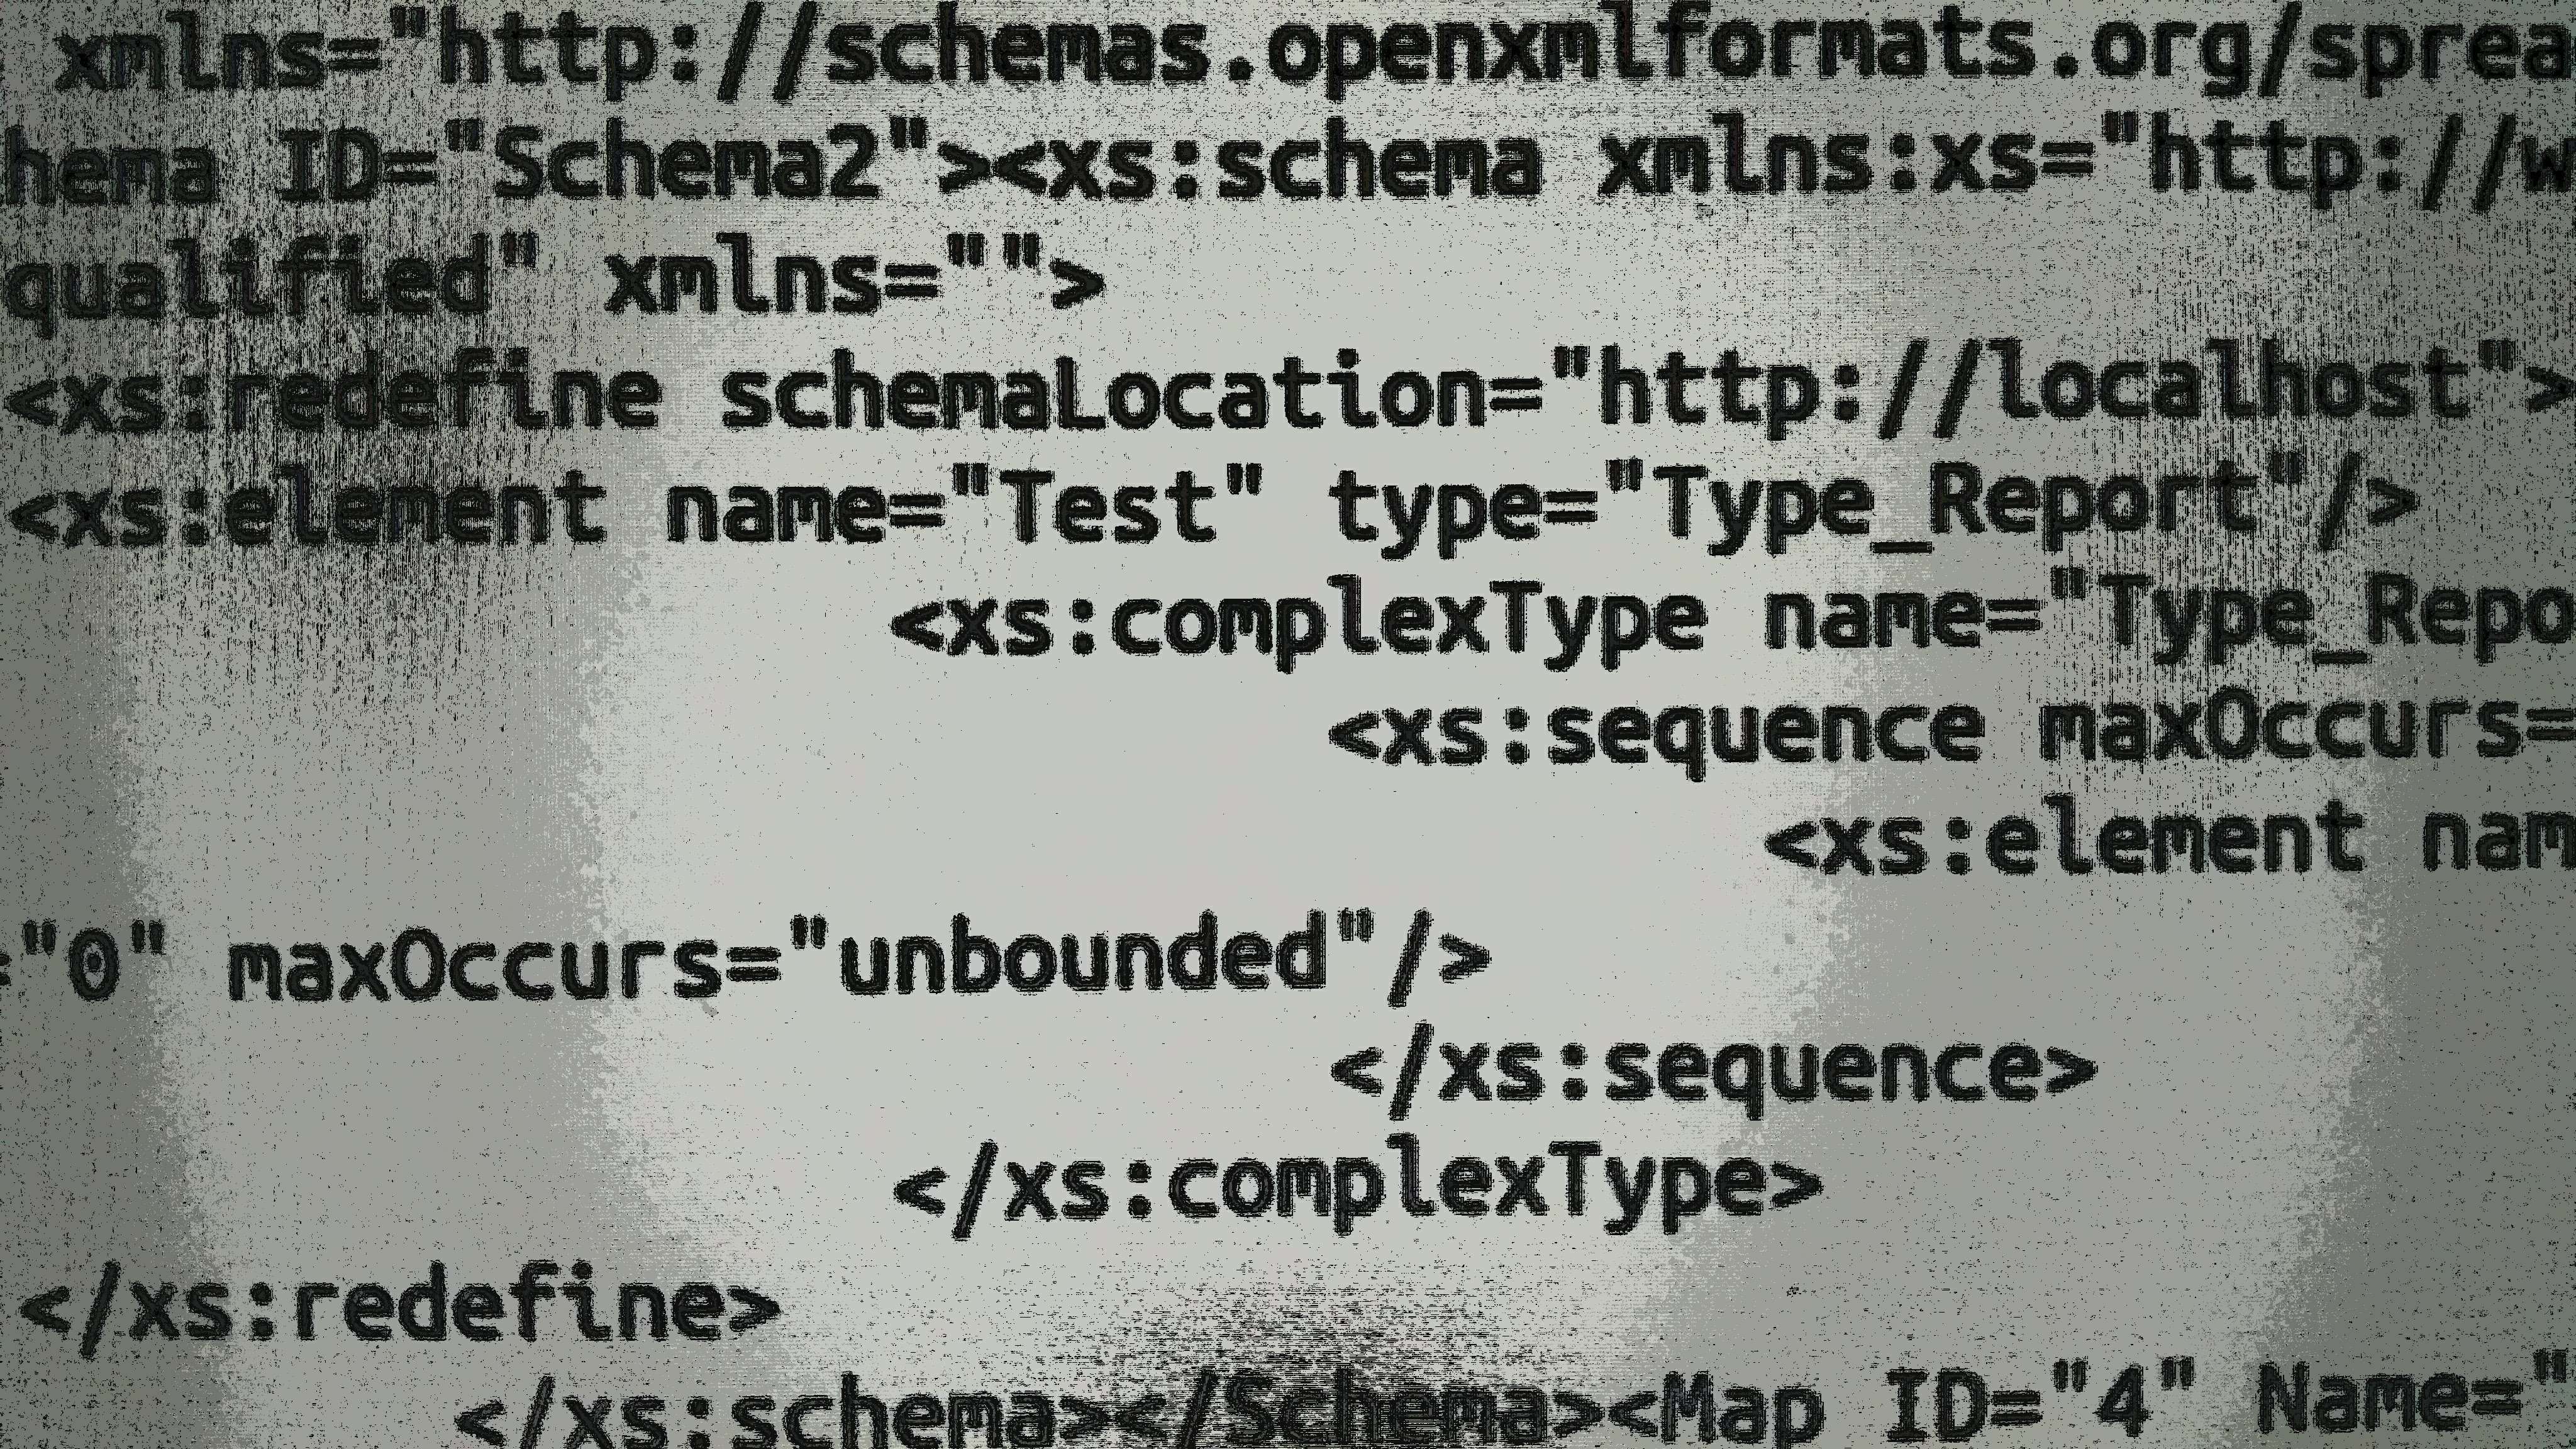 CVE-2019-12415: XML processing vulnerability in Apache POI